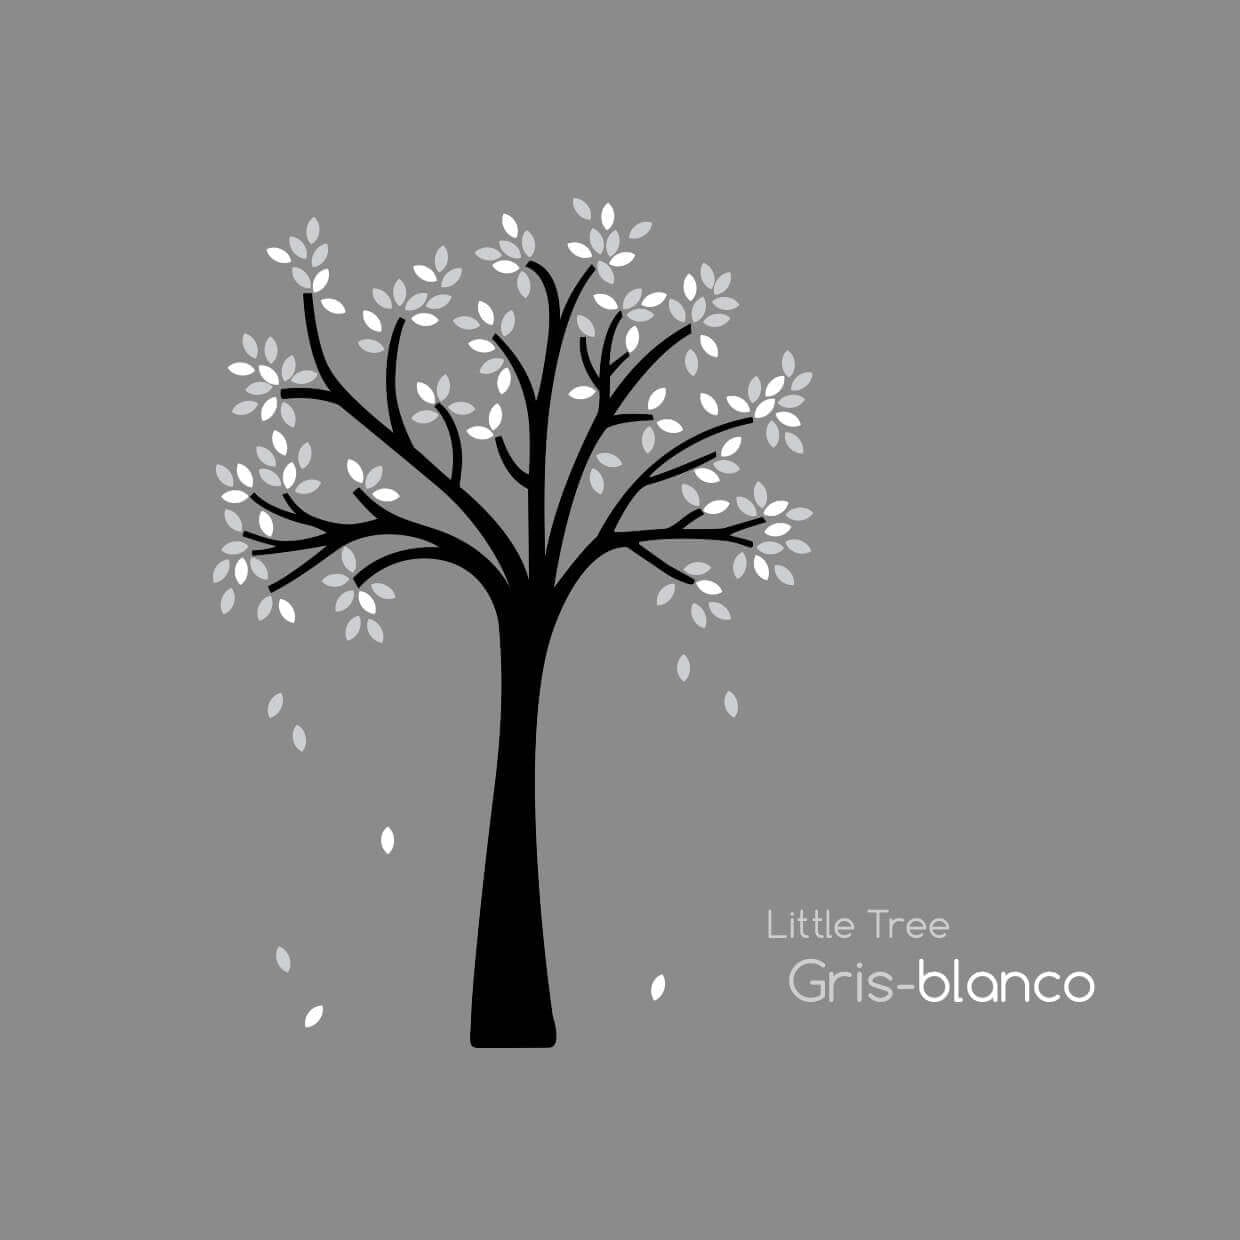 vinilo árbol pequeño con hojas blancas y grises de nicolasito #color_Arbol hojas Gris Blanco